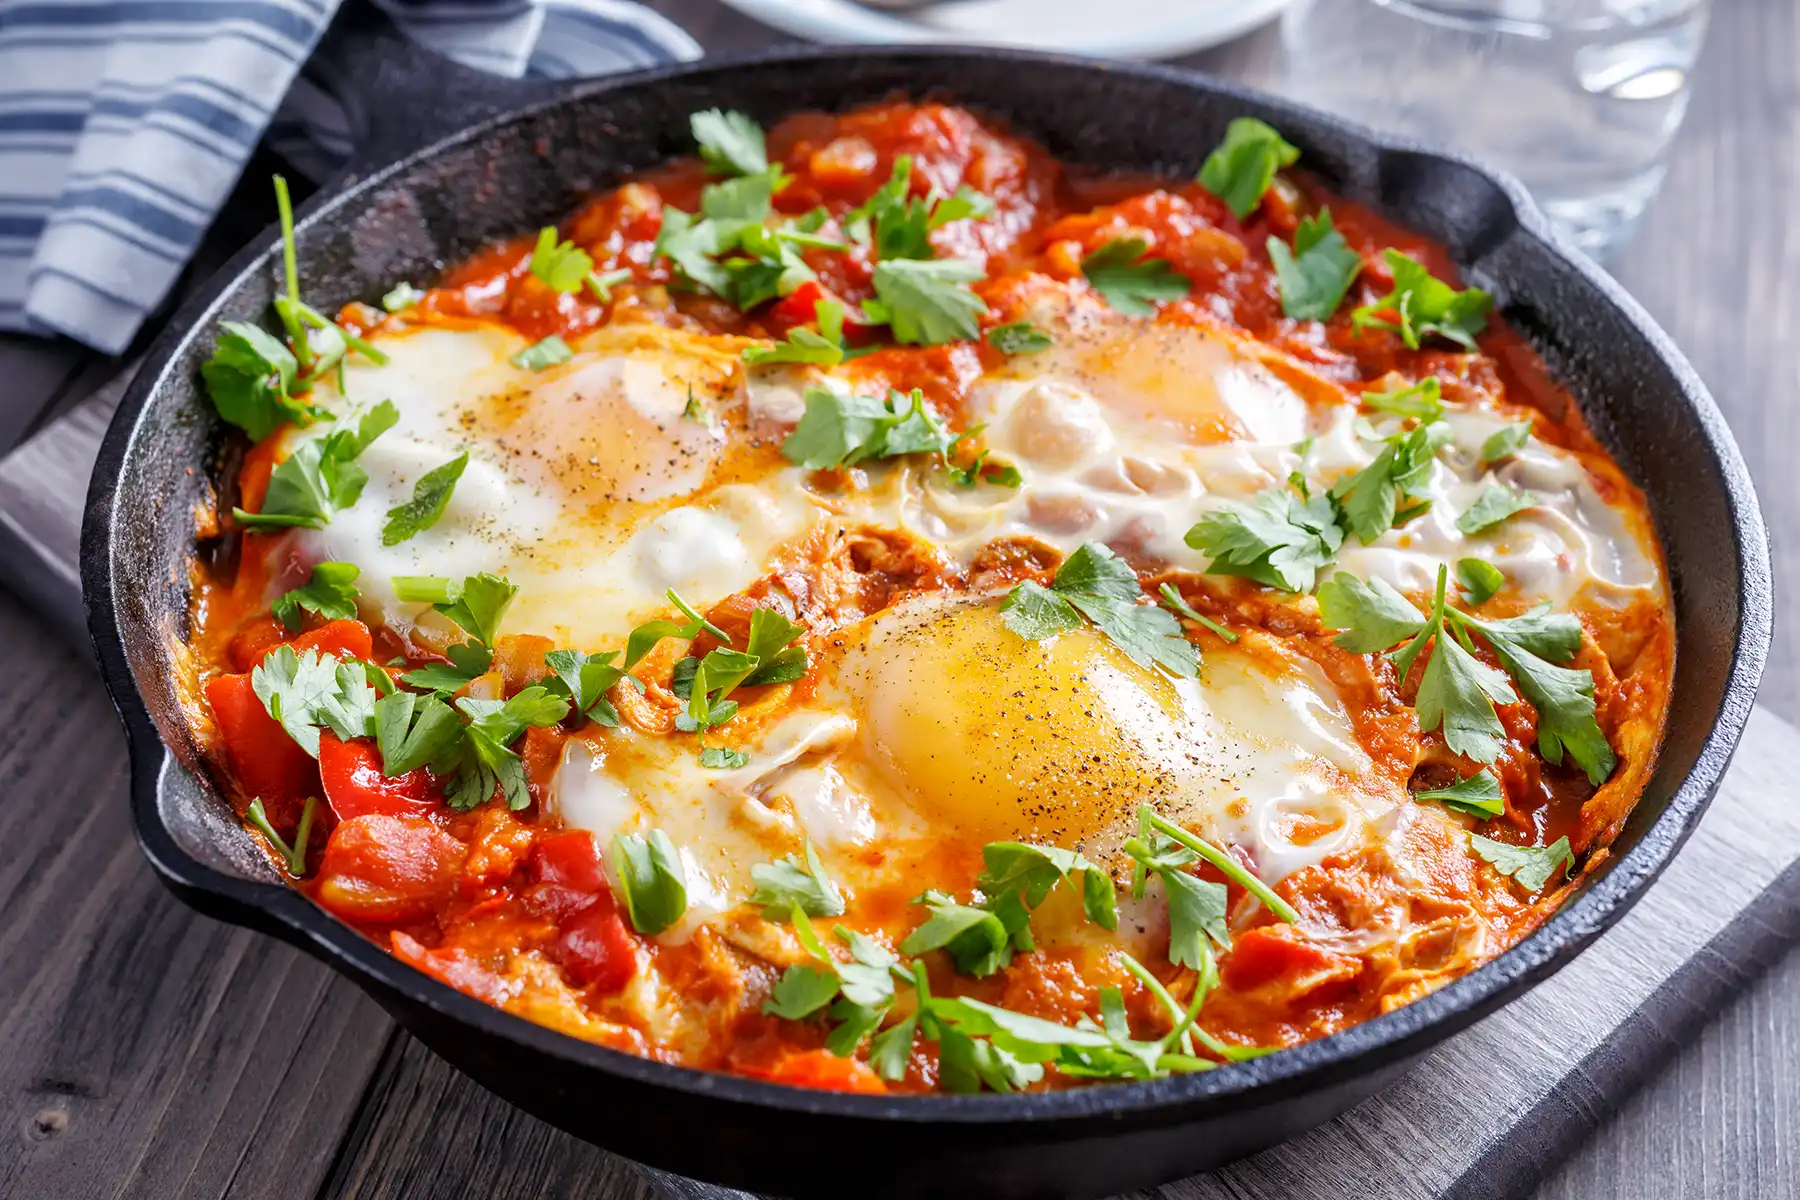 25 Best Mediterranean Diet Breakfast Recipes to Power Your Day